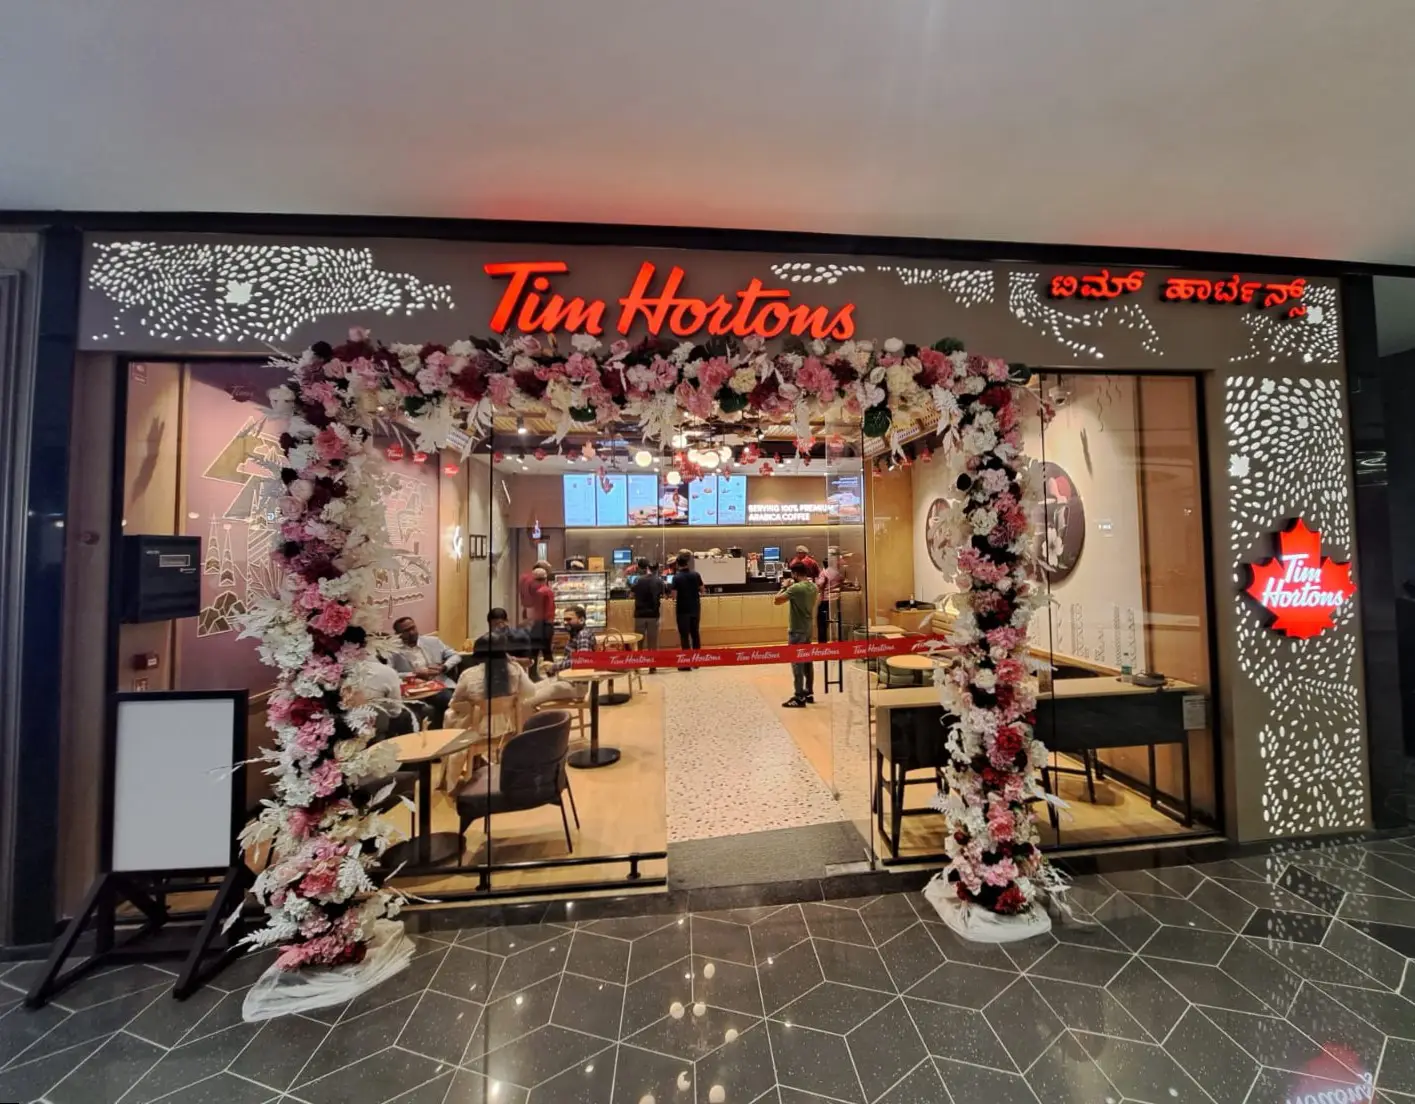 تم افتتاح متجر تيم هورتنز في فينيكس مول أوف آسيا في بنغالور في الهند